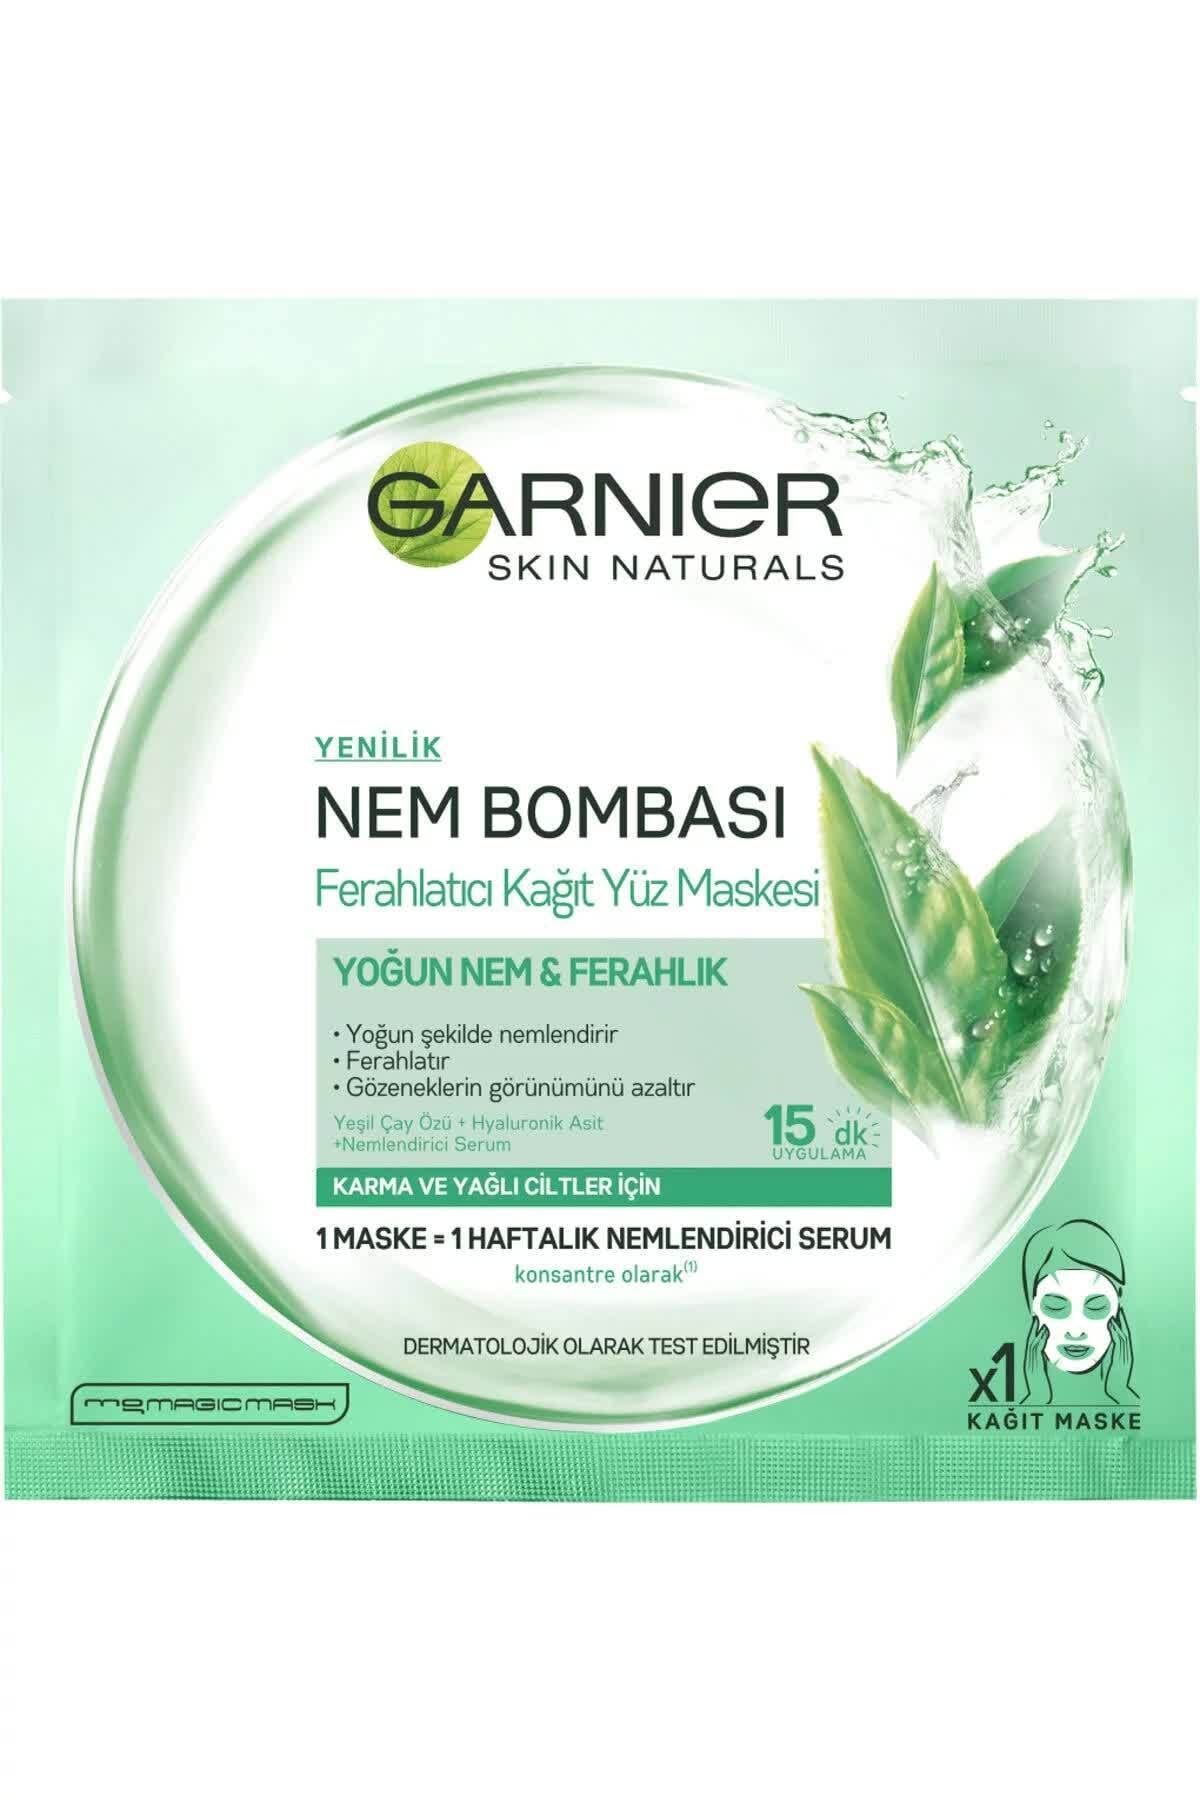 Garnier Karma & Yağlı Ciltler Için Nem Bombası Ferahlatıcı Kağıt Yüz Maskesi 32 G 3600541945630